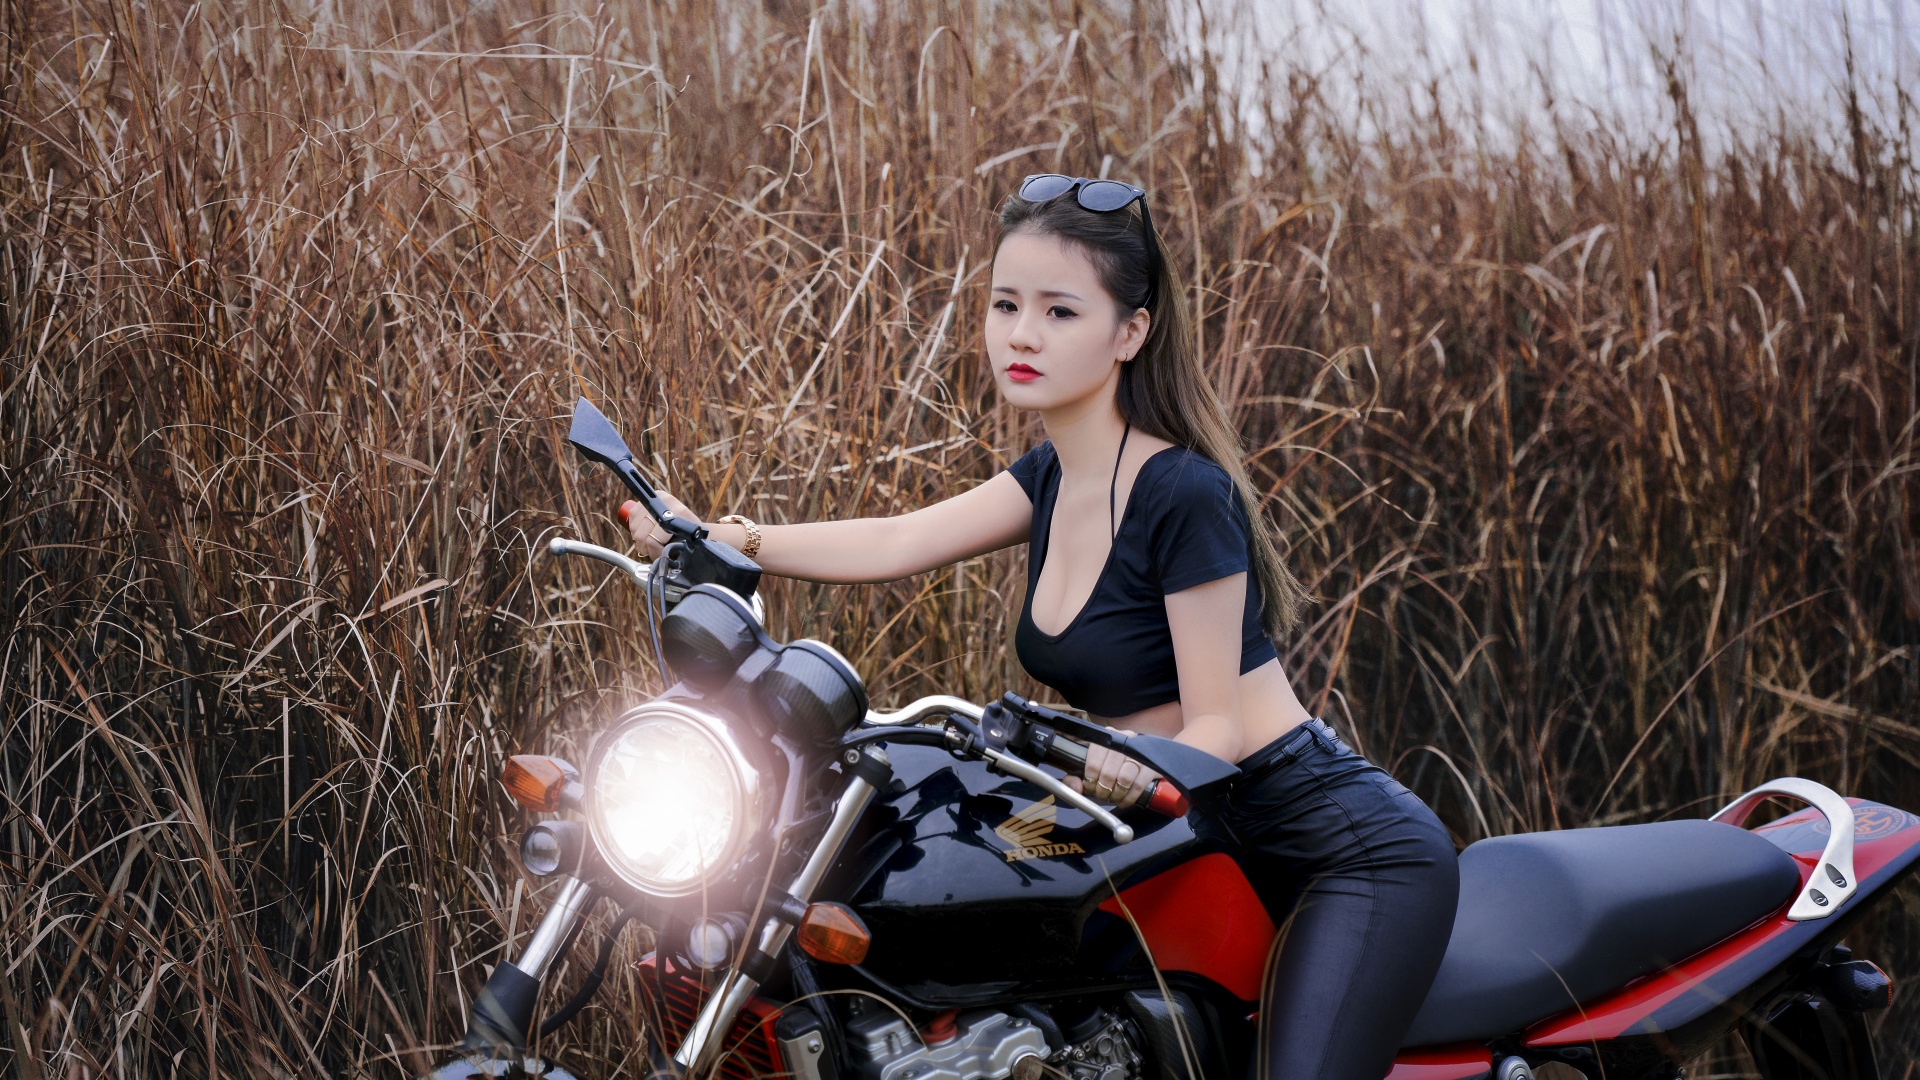 芦苇草丛,摩托车性感美女桌面壁纸